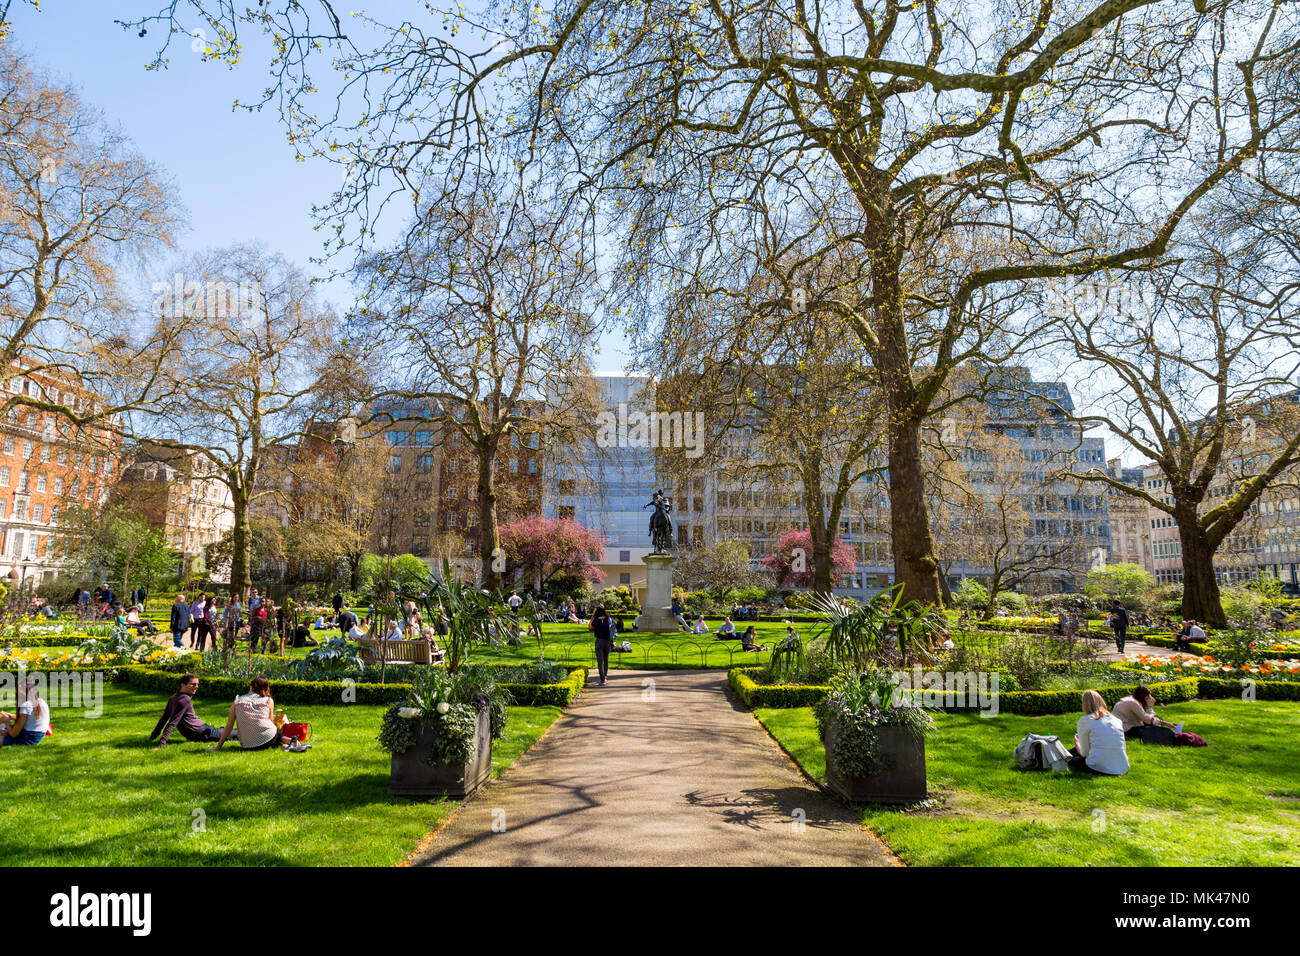 Leute sitzen auf das Gras und das Mittagessen in einem kleinen Stadtpark, St James's Square Garden, London, UK Stockfoto